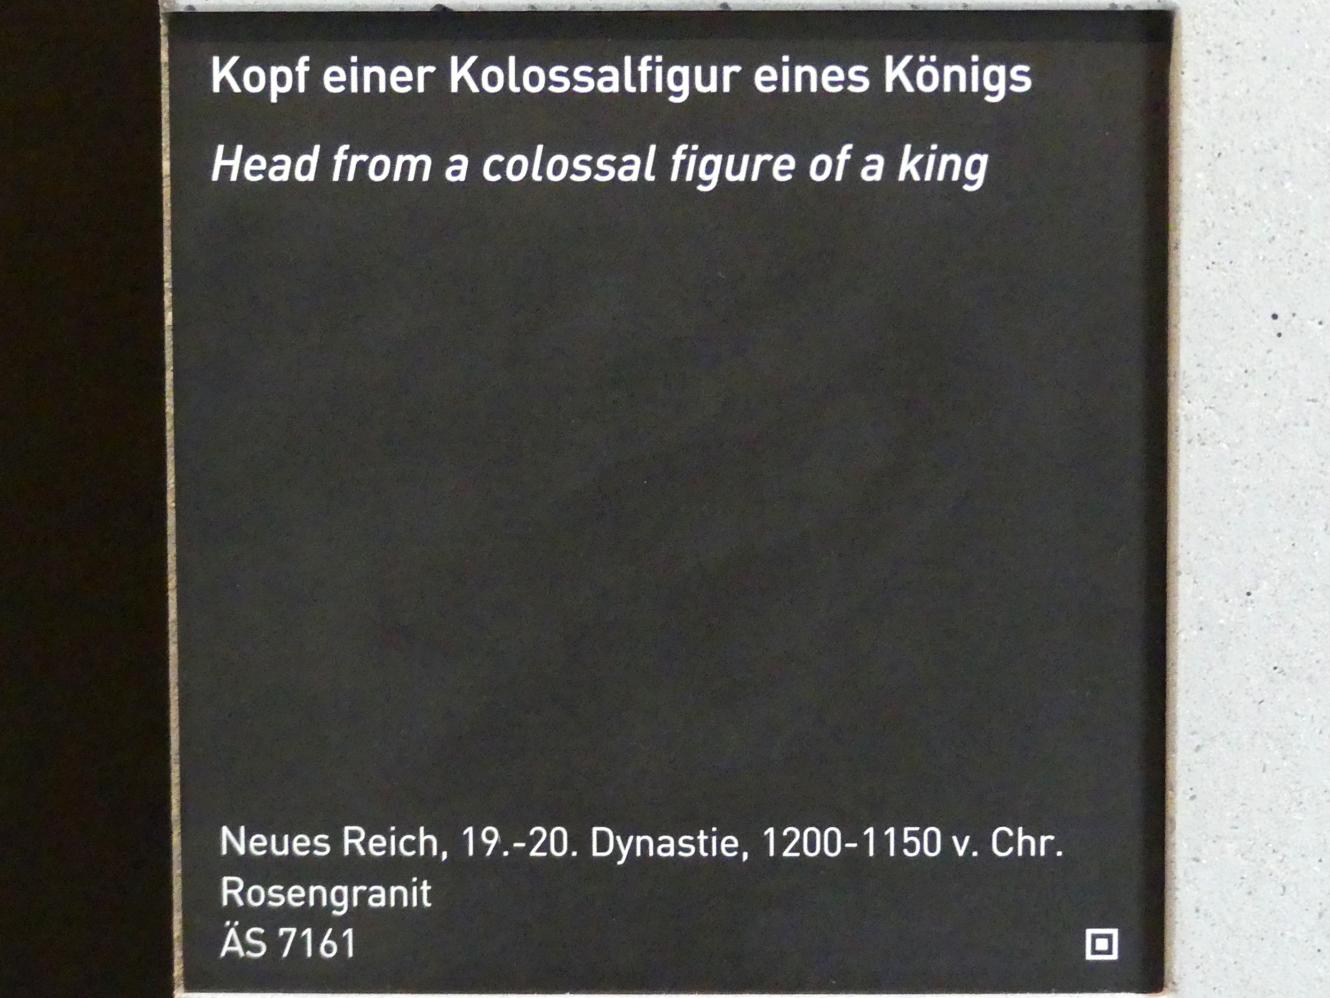 Kopf einer Kolossalfigur eines Königs, Neues Reich, 953 - 887 v. Chr., 1200 - 1150 v. Chr., Bild 4/4